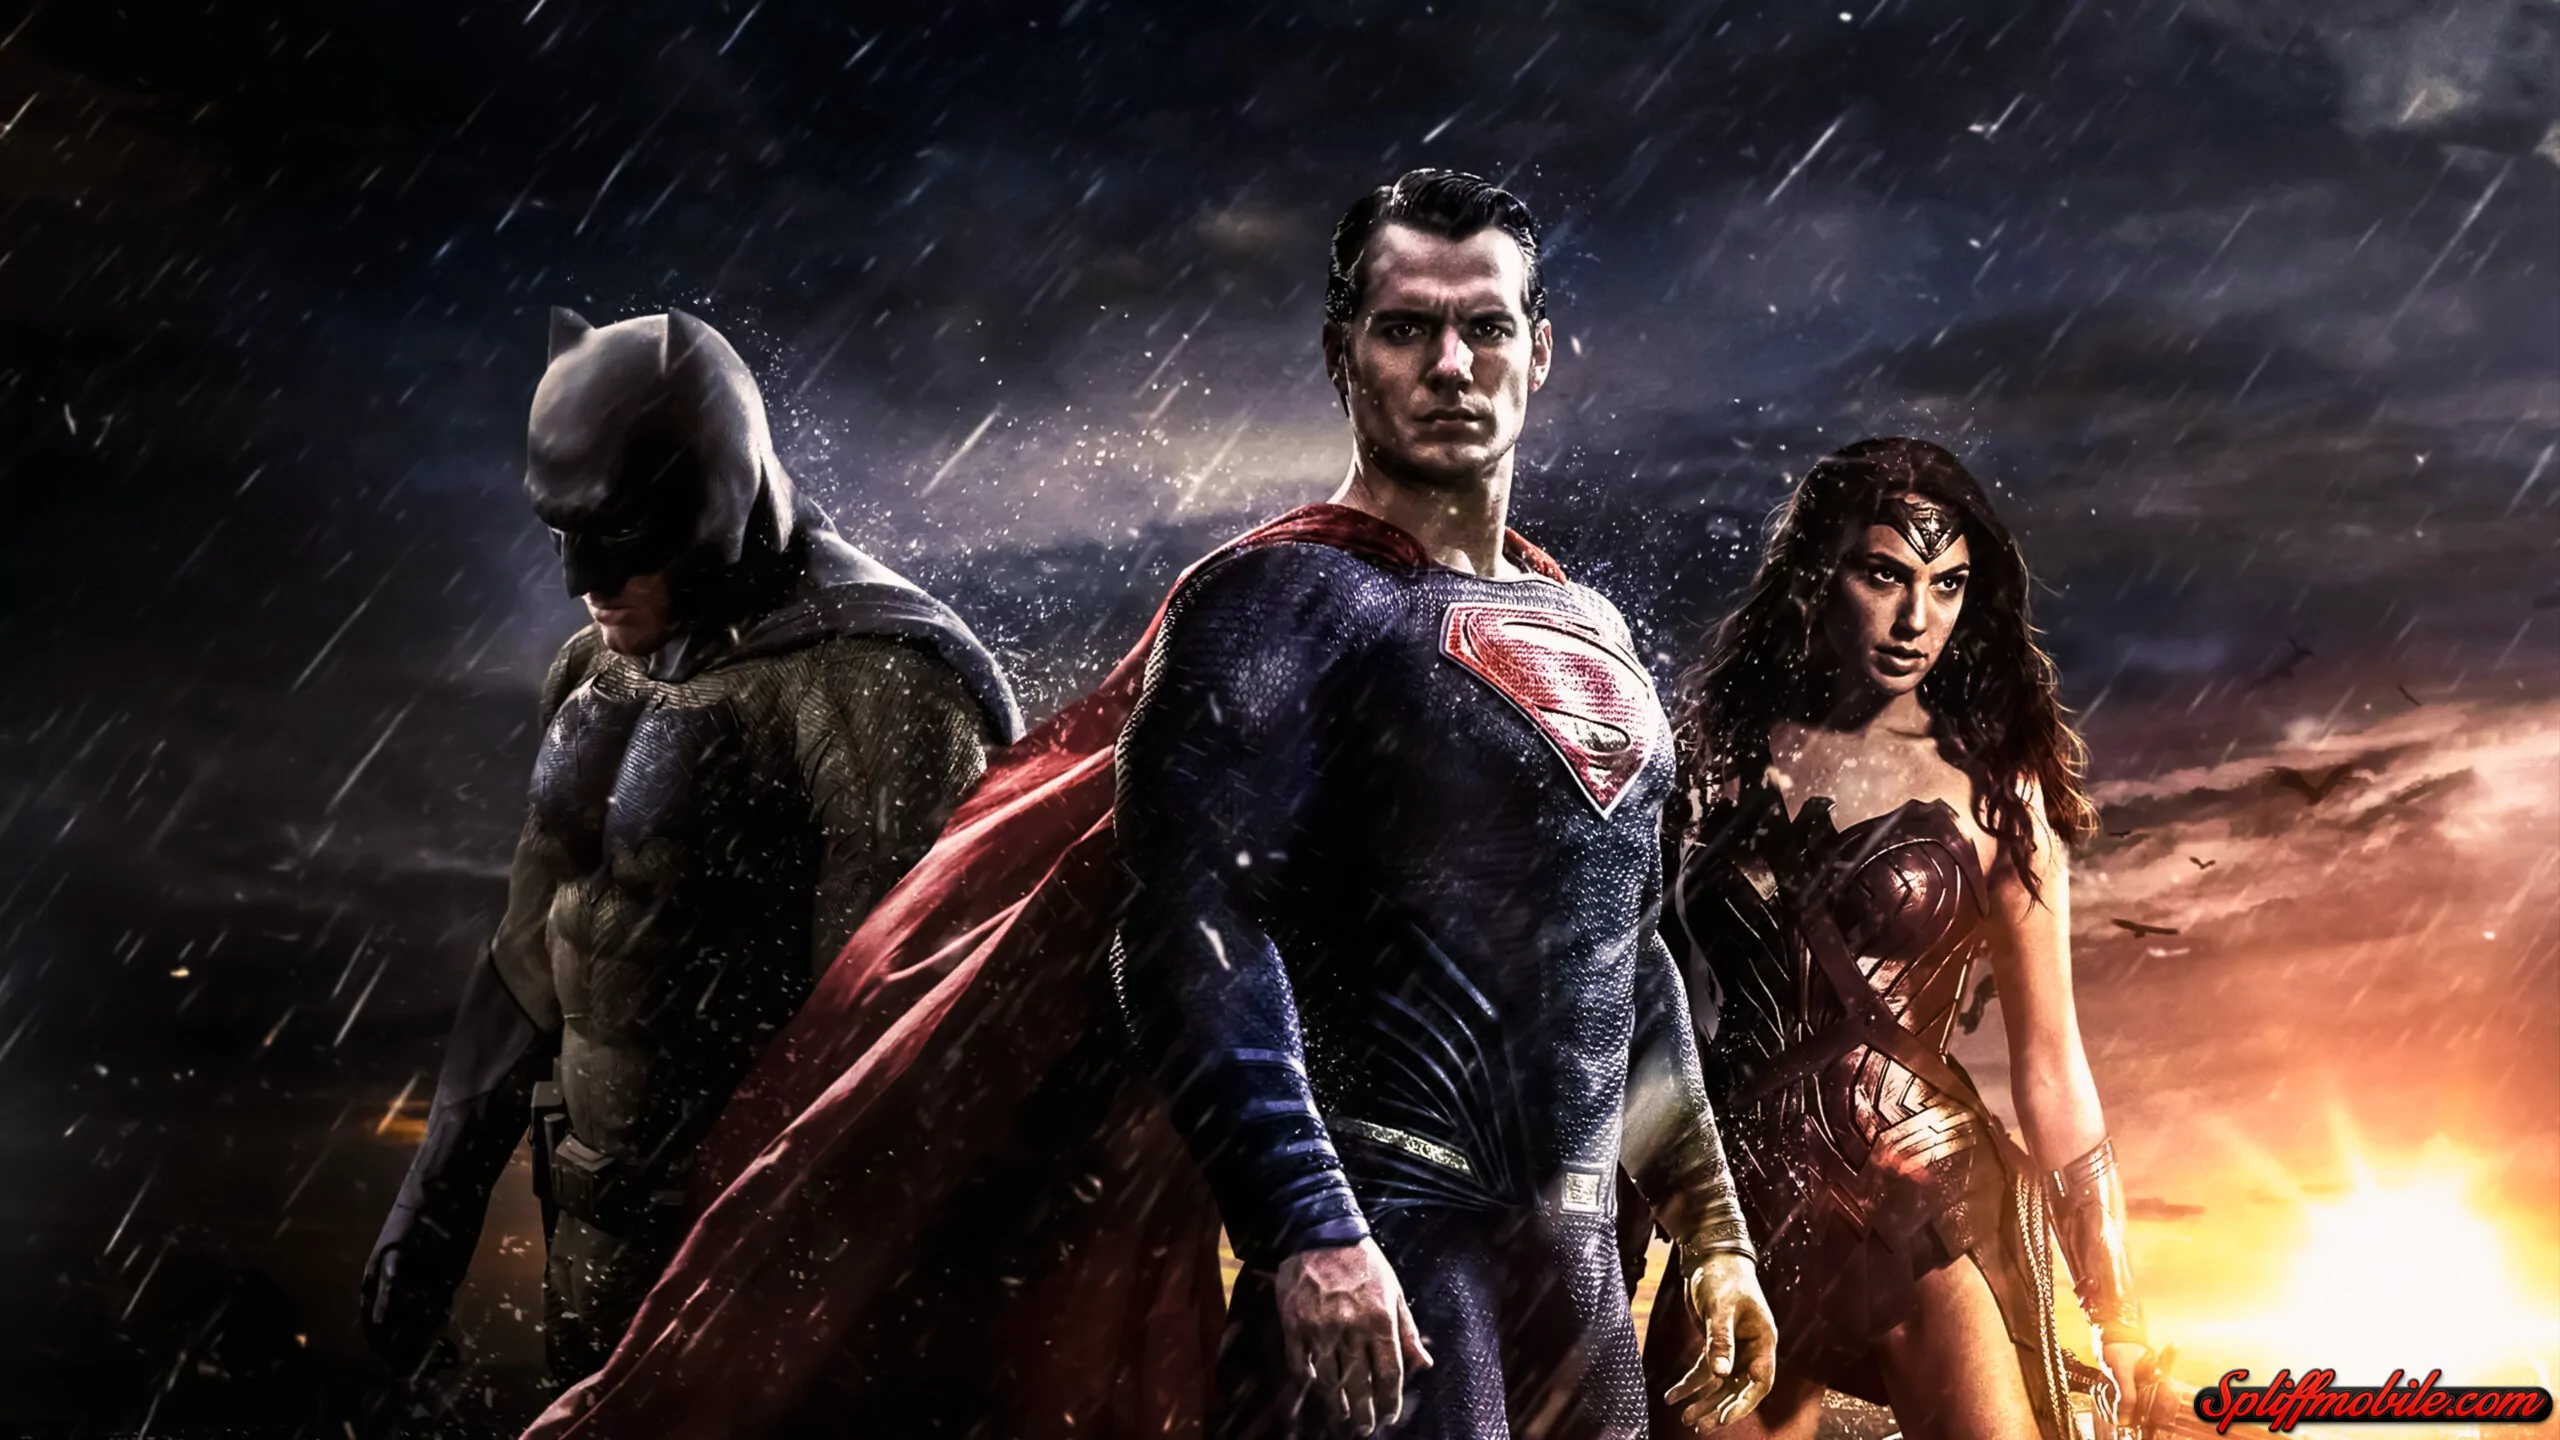 Papel de Parede para Celular: Imortalize a Épica dos Super-Heróis!